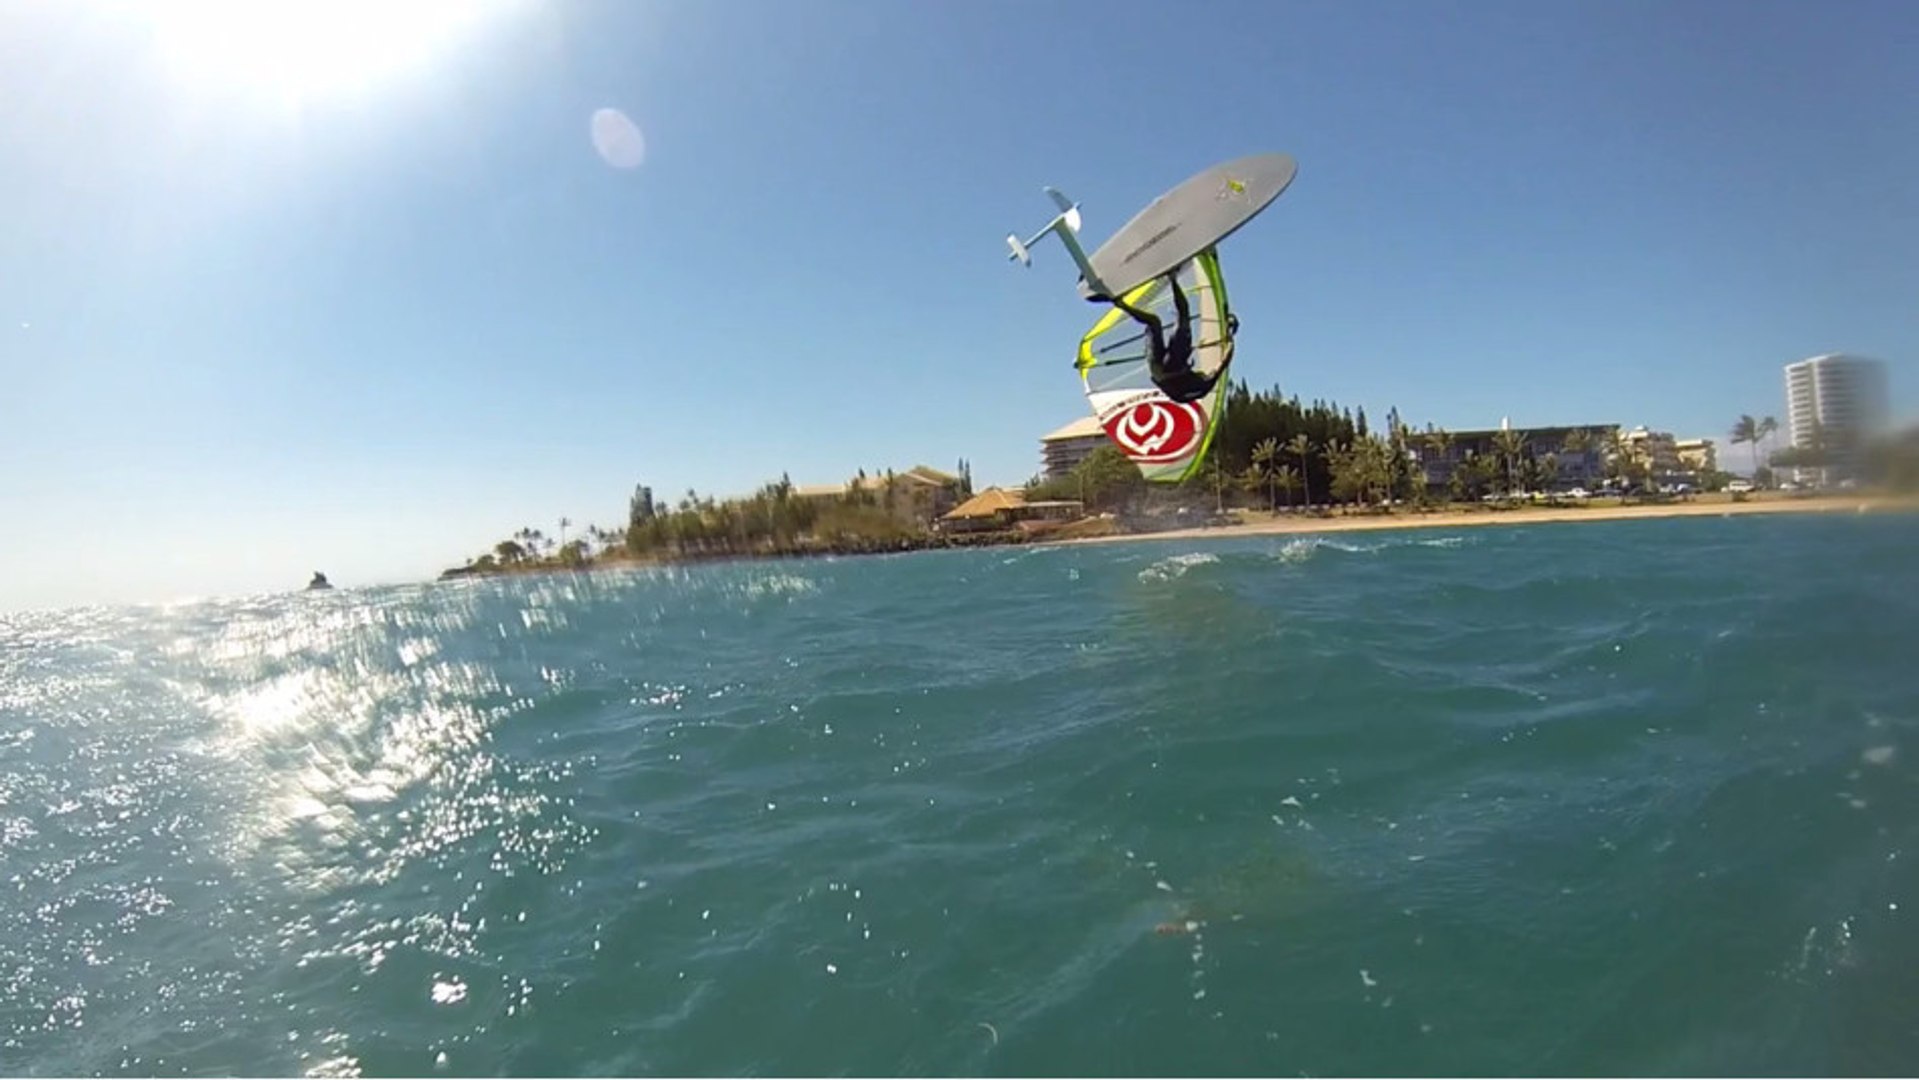 Windsurf : Le backflip extraordinaire de Benjamin Tillier en planche à voile  - Vidéo Dailymotion